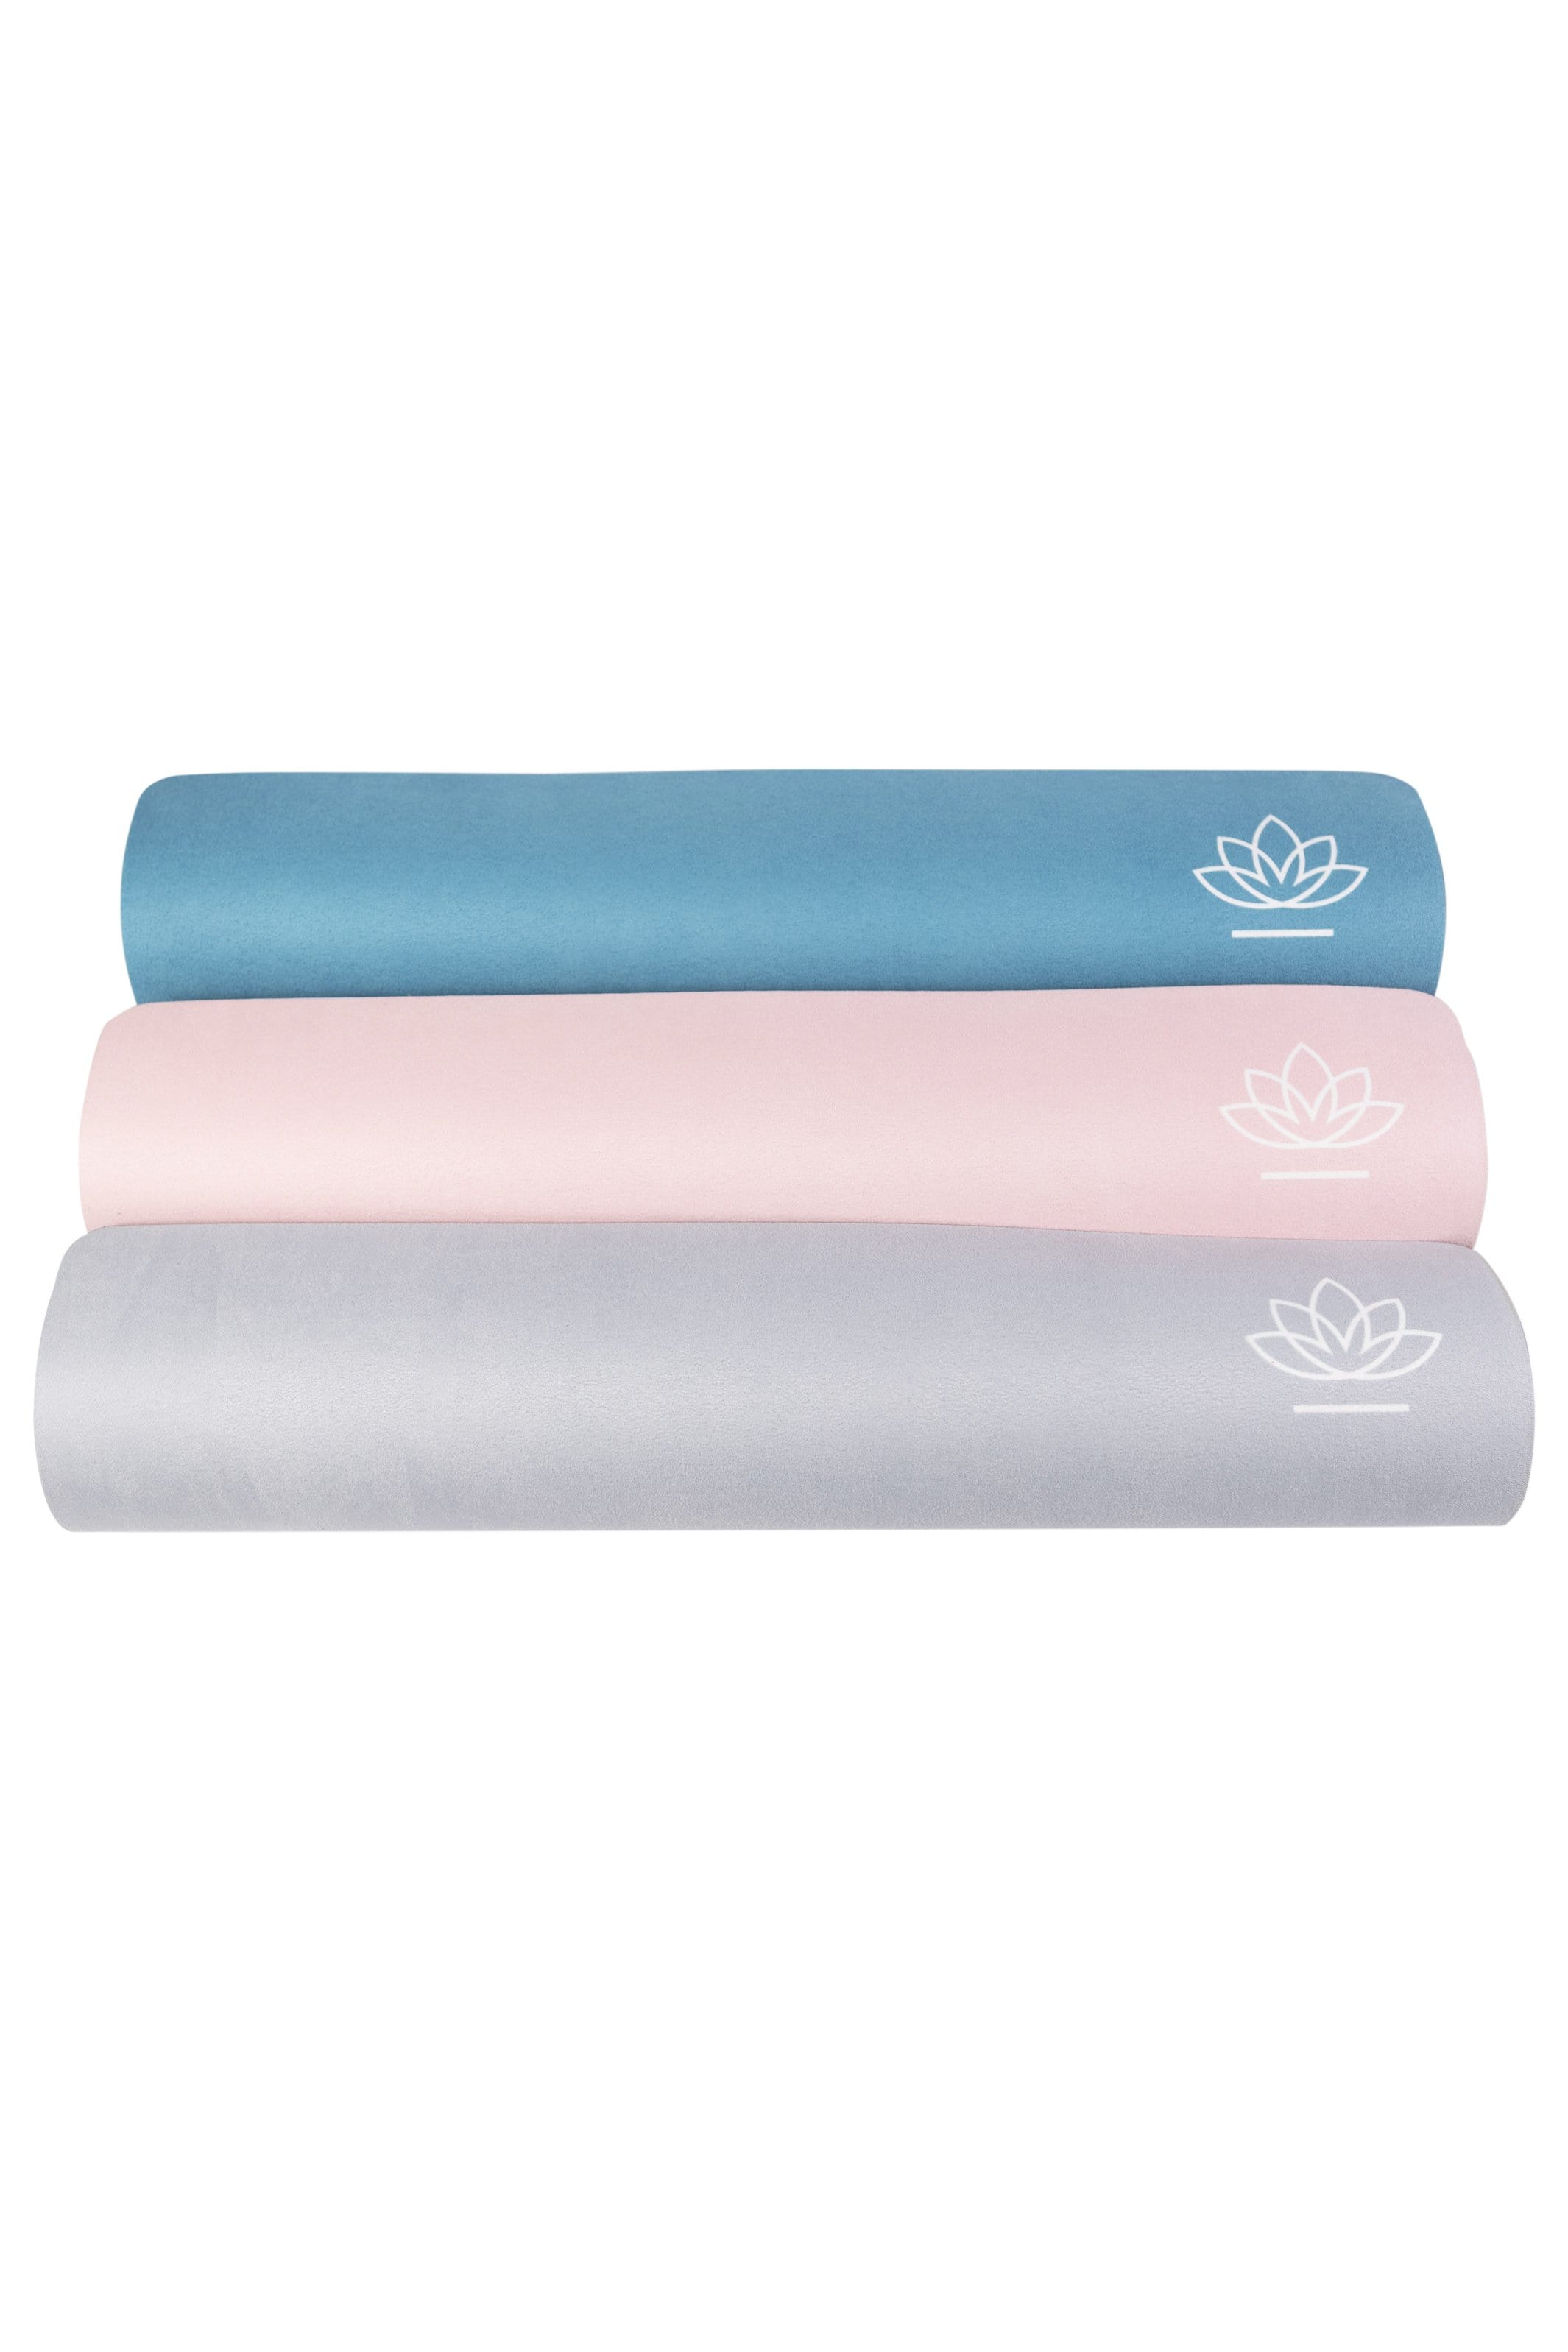 Apheleia Pink - 3mm Luxury Yoga Mat